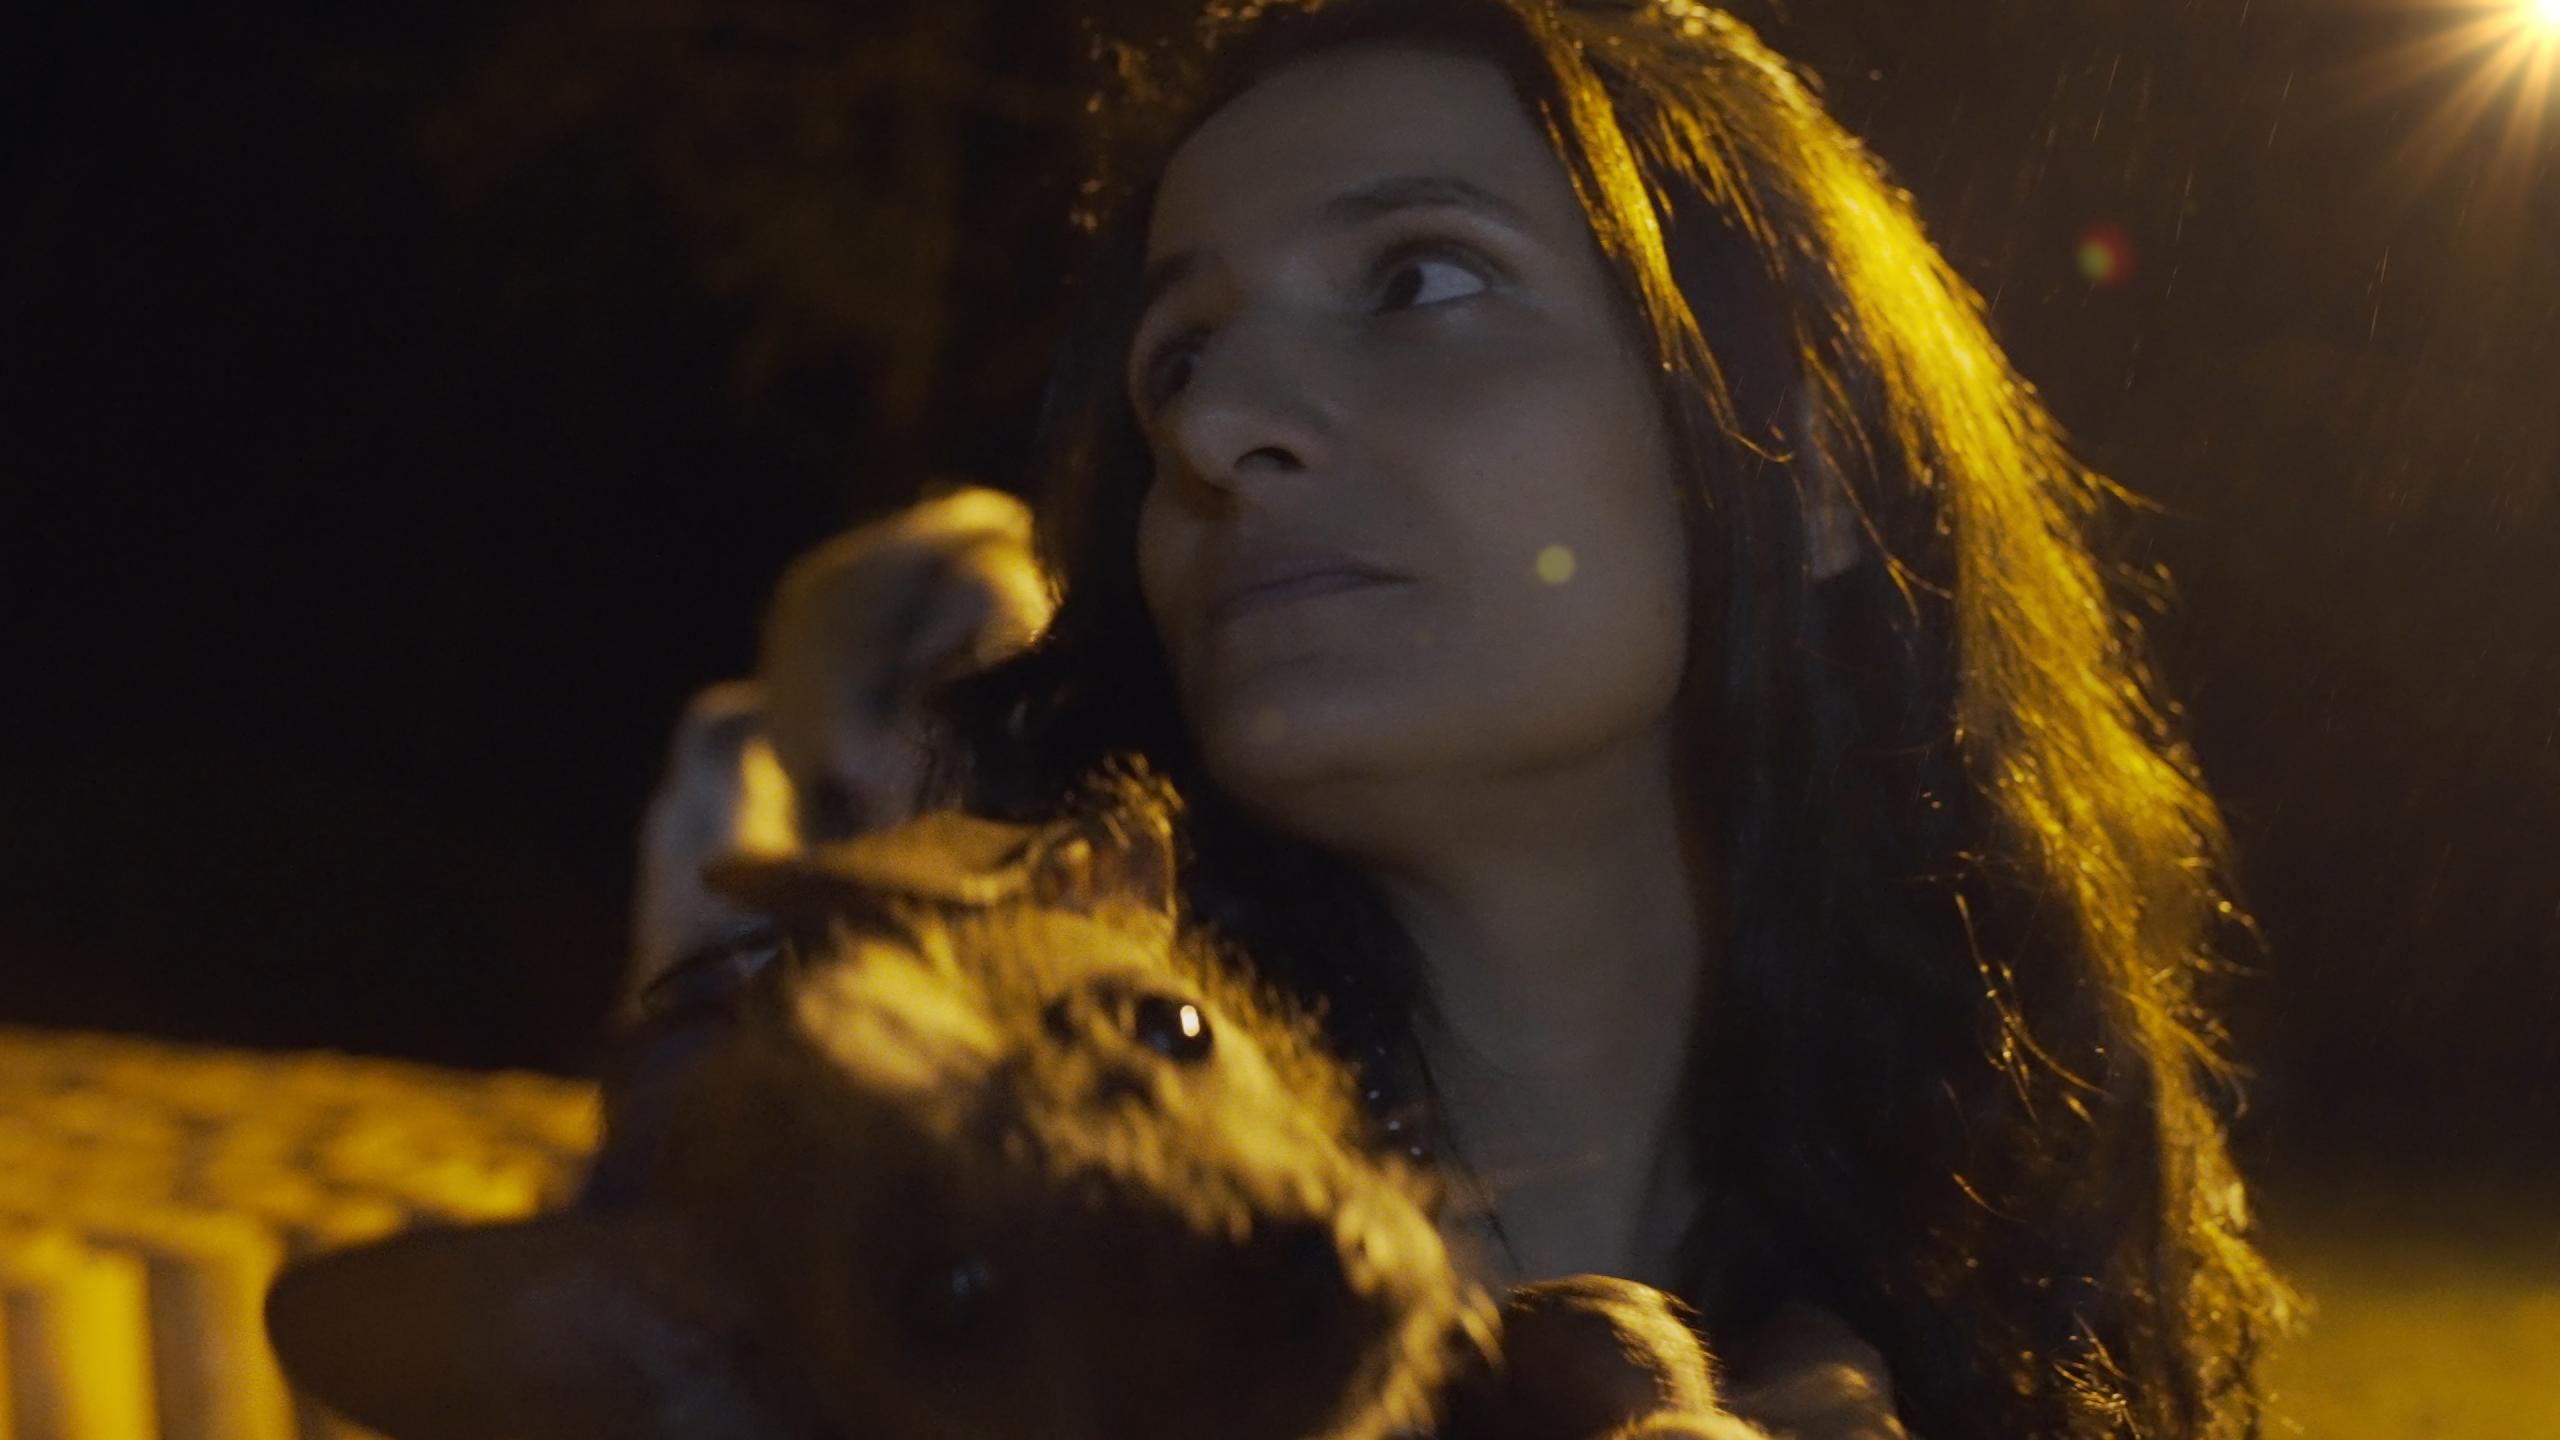 Ein Frau mit langen dunklen Haaren hält einen kleinen Hund auf dem Arm. Sie schaut zur Seite und wird von hinten von einer hellen Laterne angeleuchtet.